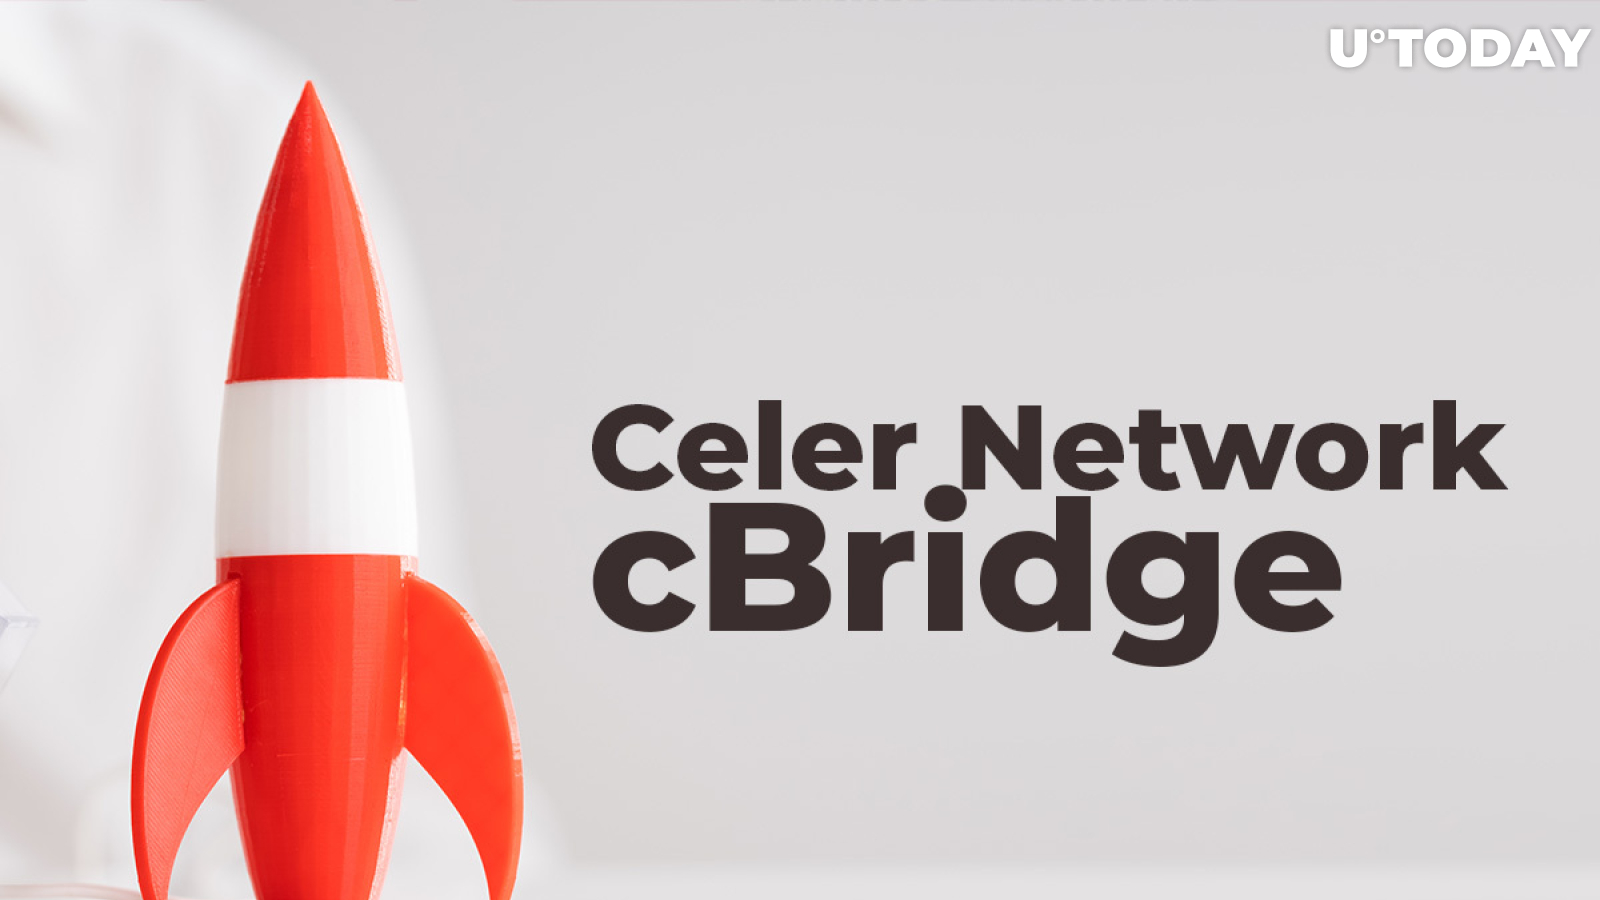 Celer Network (CELR) Launches cBridge on Mainnet: Details